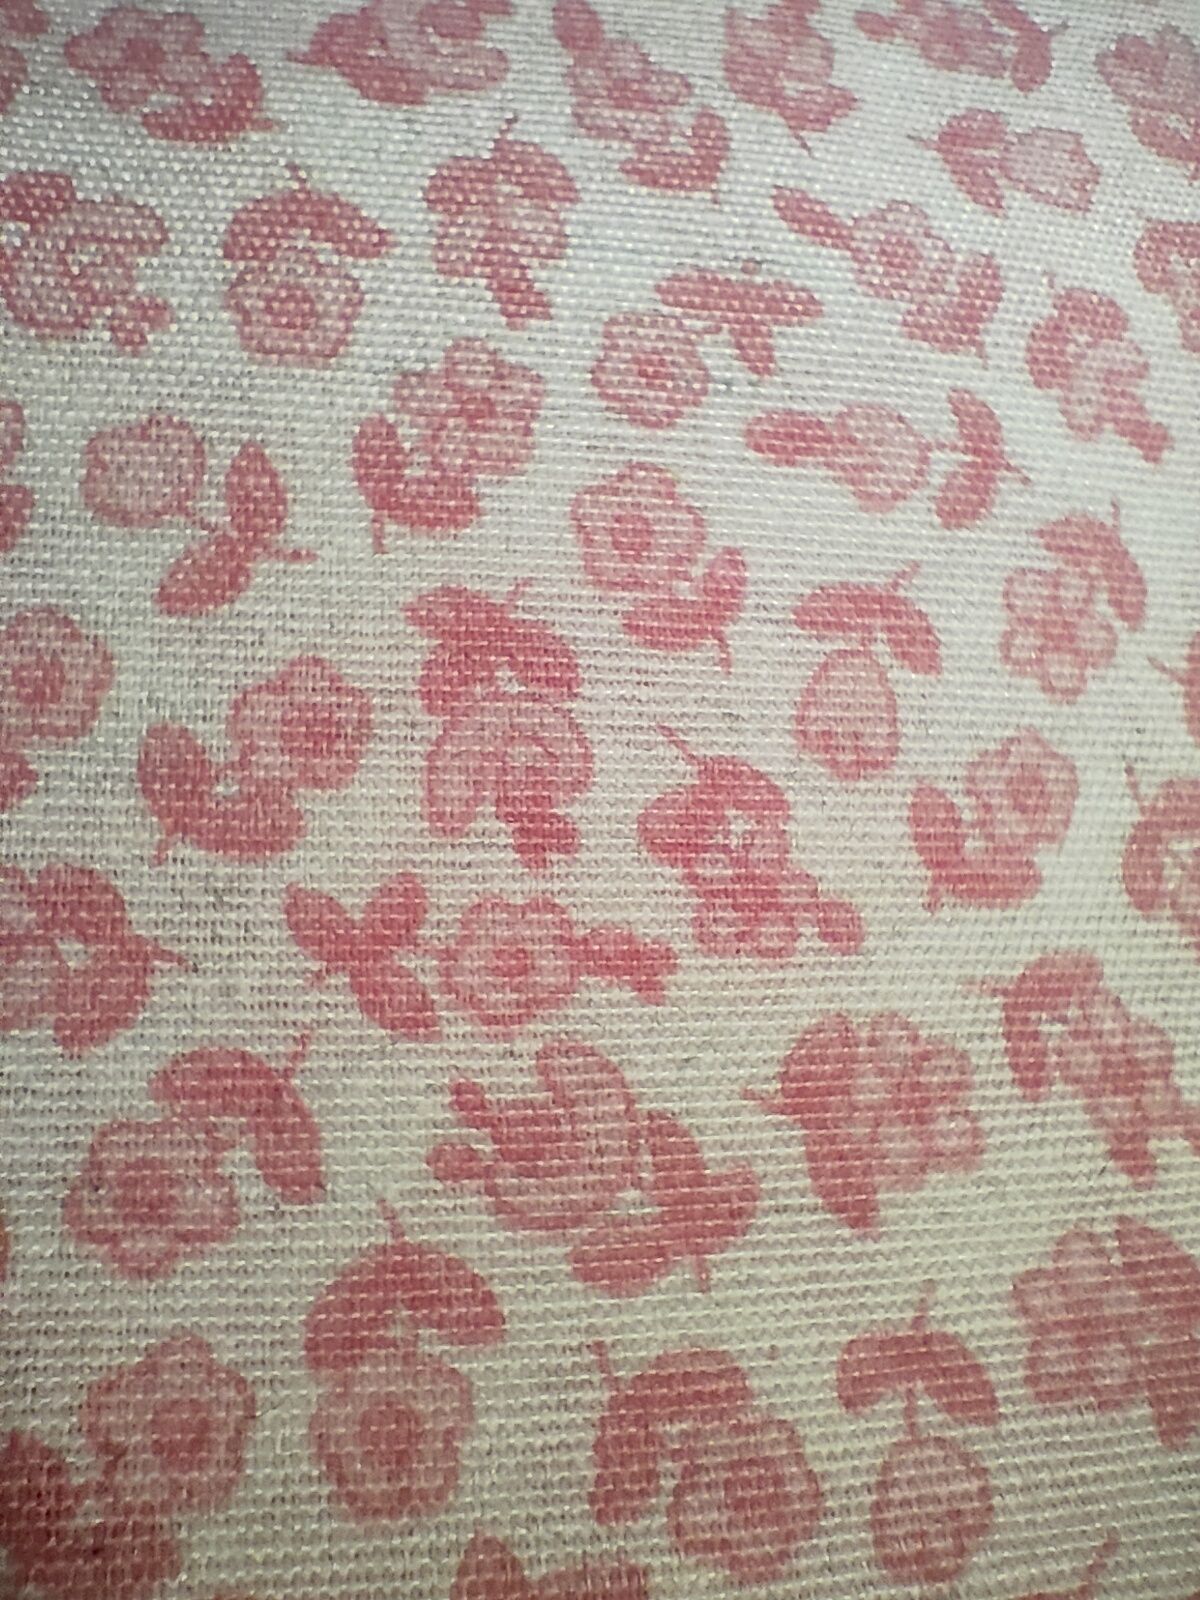 Tecido padrão rosas - 1mx2.85m